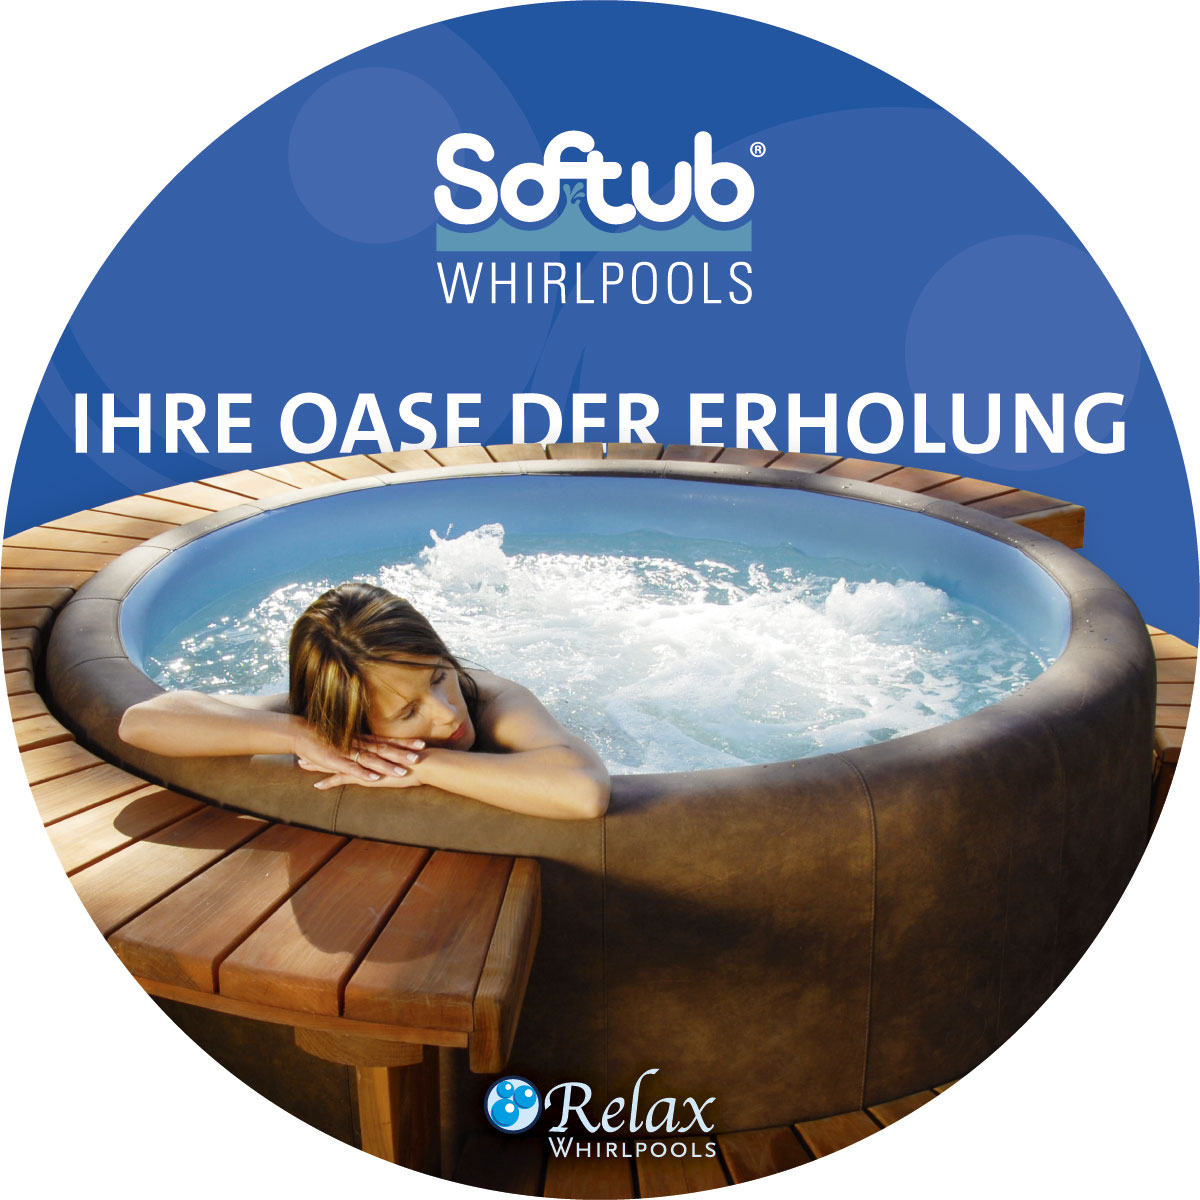 Rundkarte für Relax Whirlpools